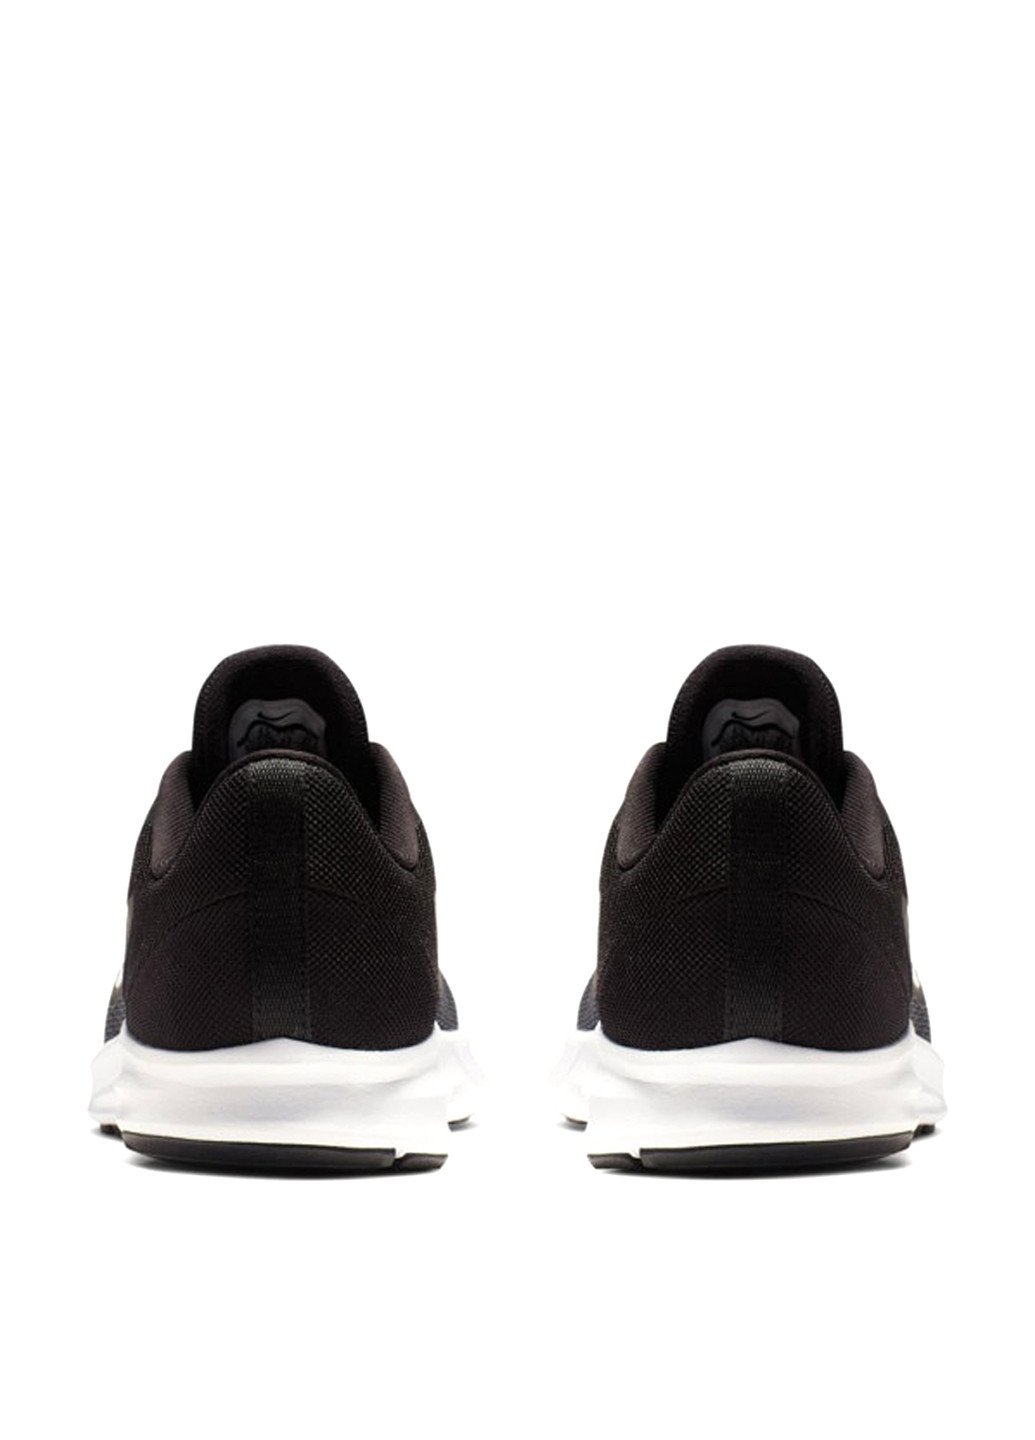 Черные всесезонные кроссовки Nike Downshifter 9